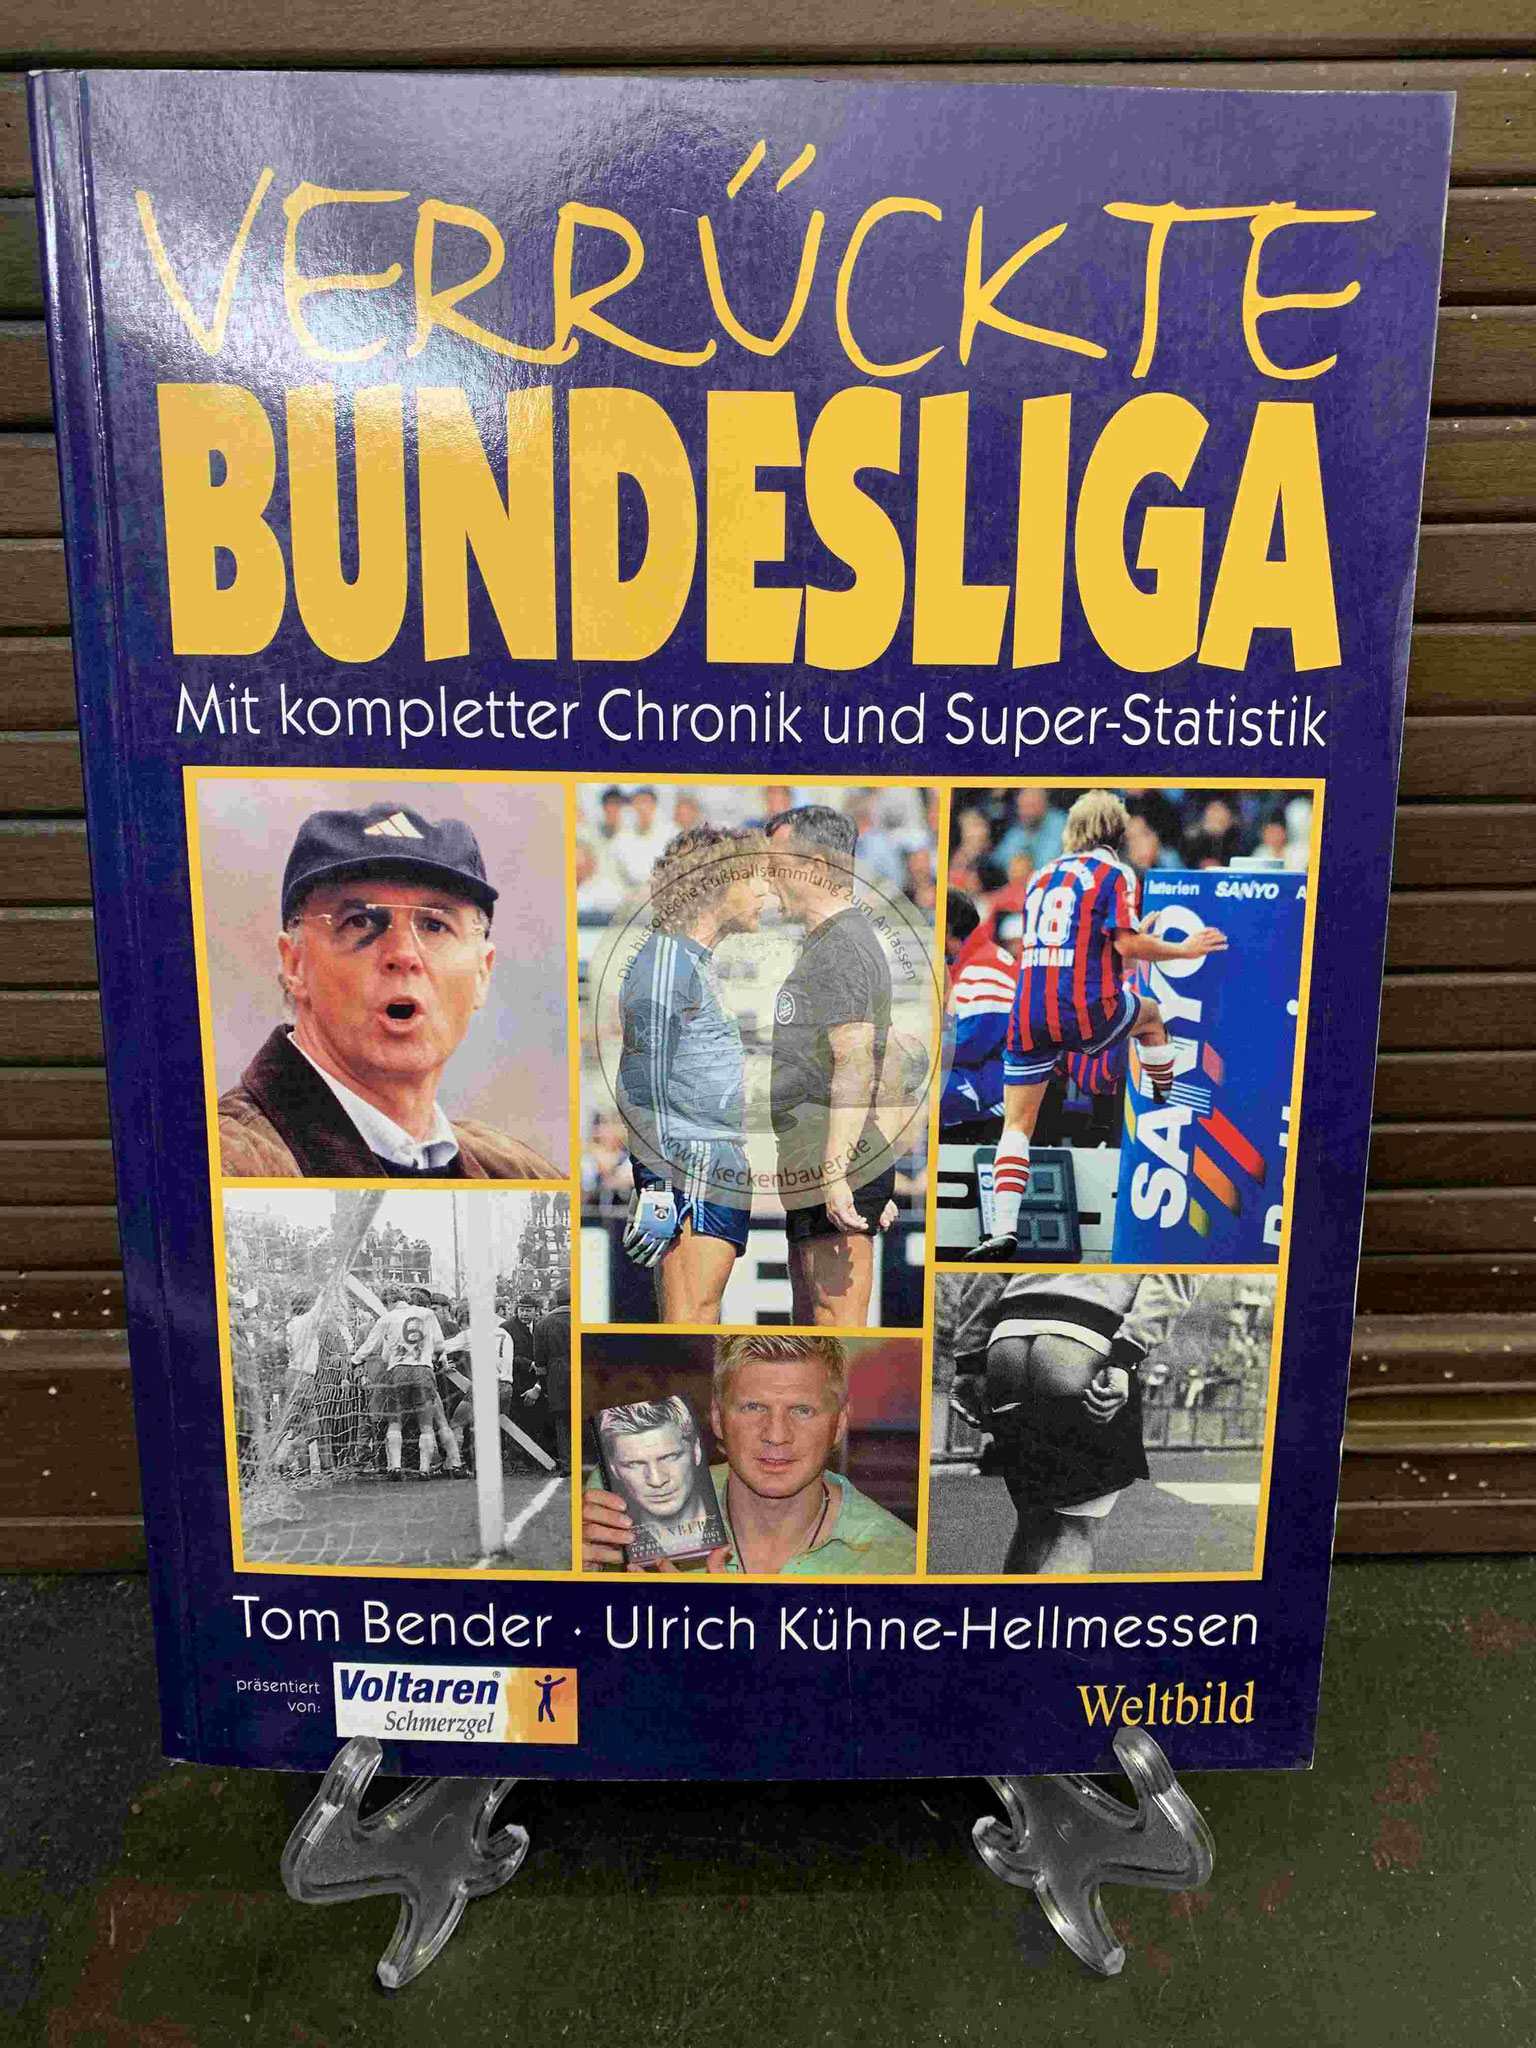 Verrückte Bundesliga mit kompletter Chronik und Super-Statistik von Tom Bender und Ulrich Kühne-Hellmessen im Weltbild Verlag aus dem Jahr 2003